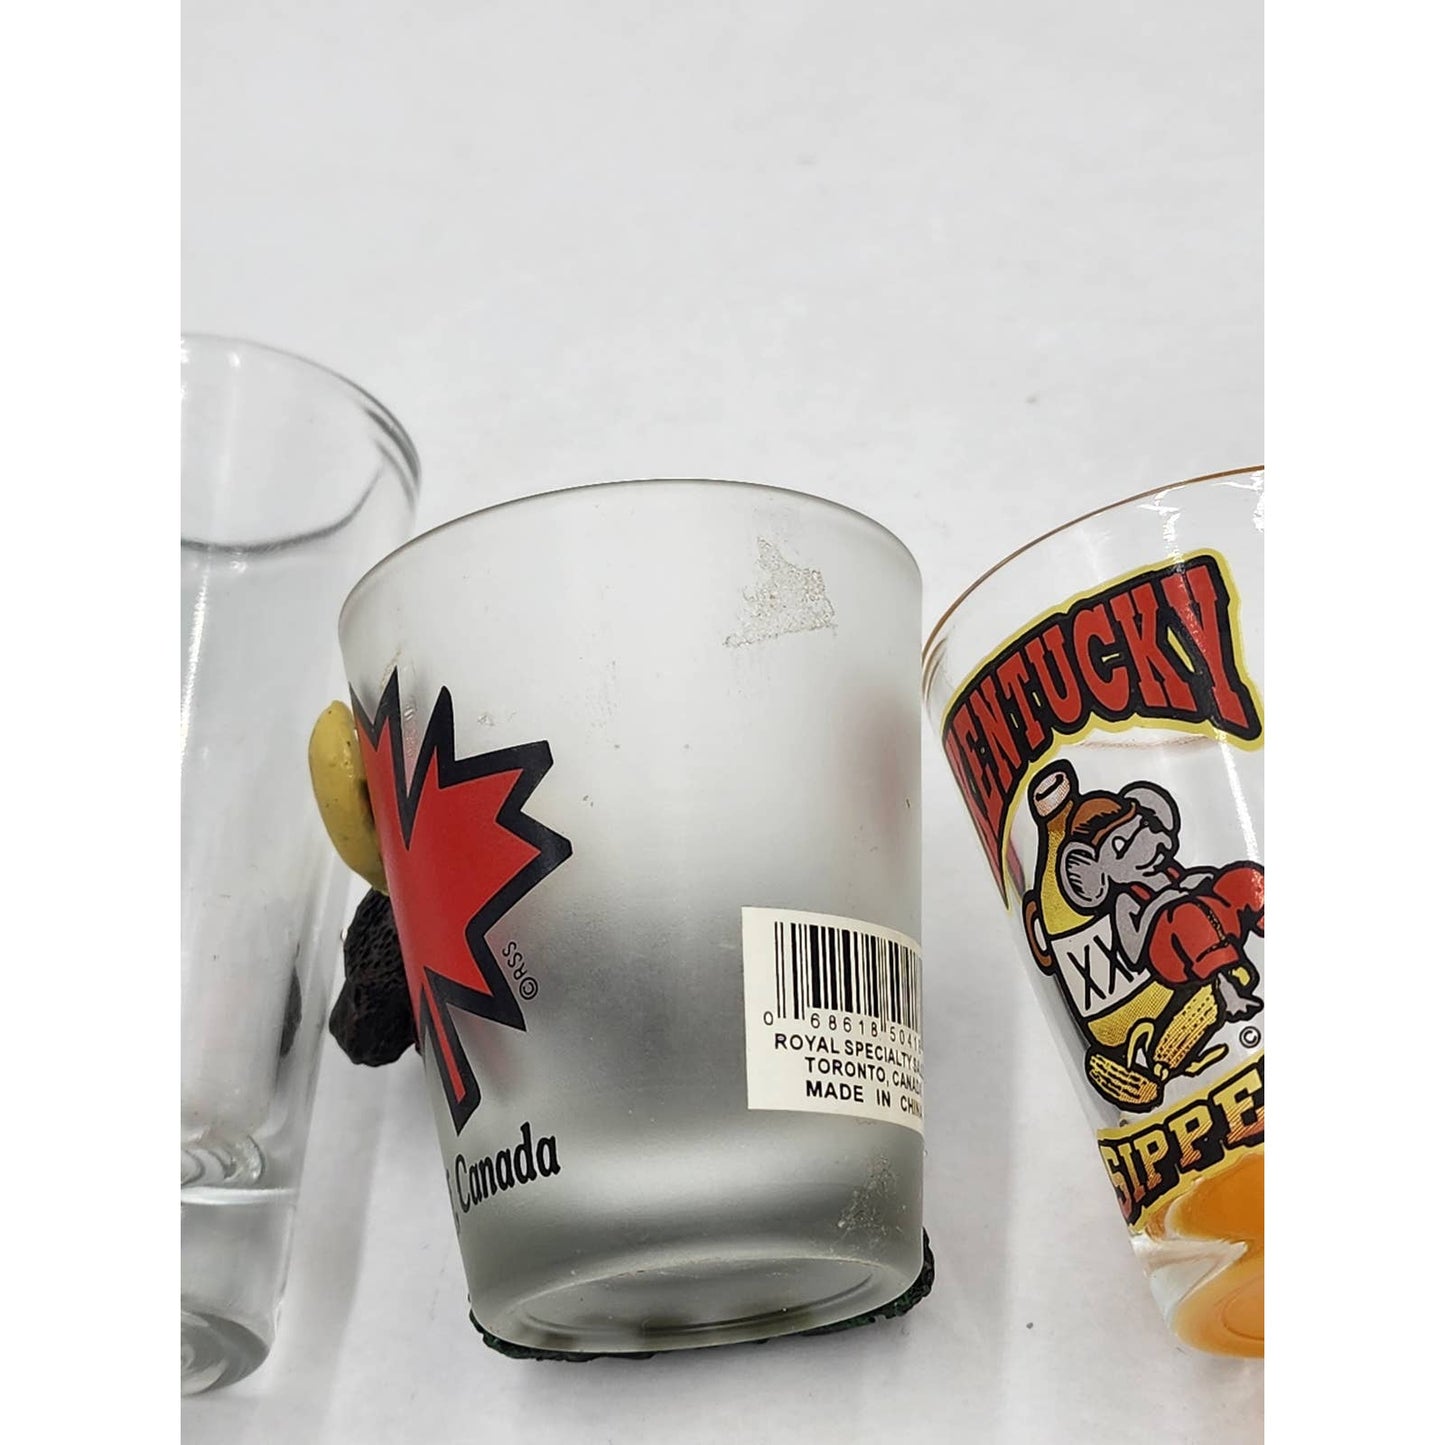 Shot Glasses Collection Bar Vintage Kentucky Sipper Banff Moose Mexico Souvenir